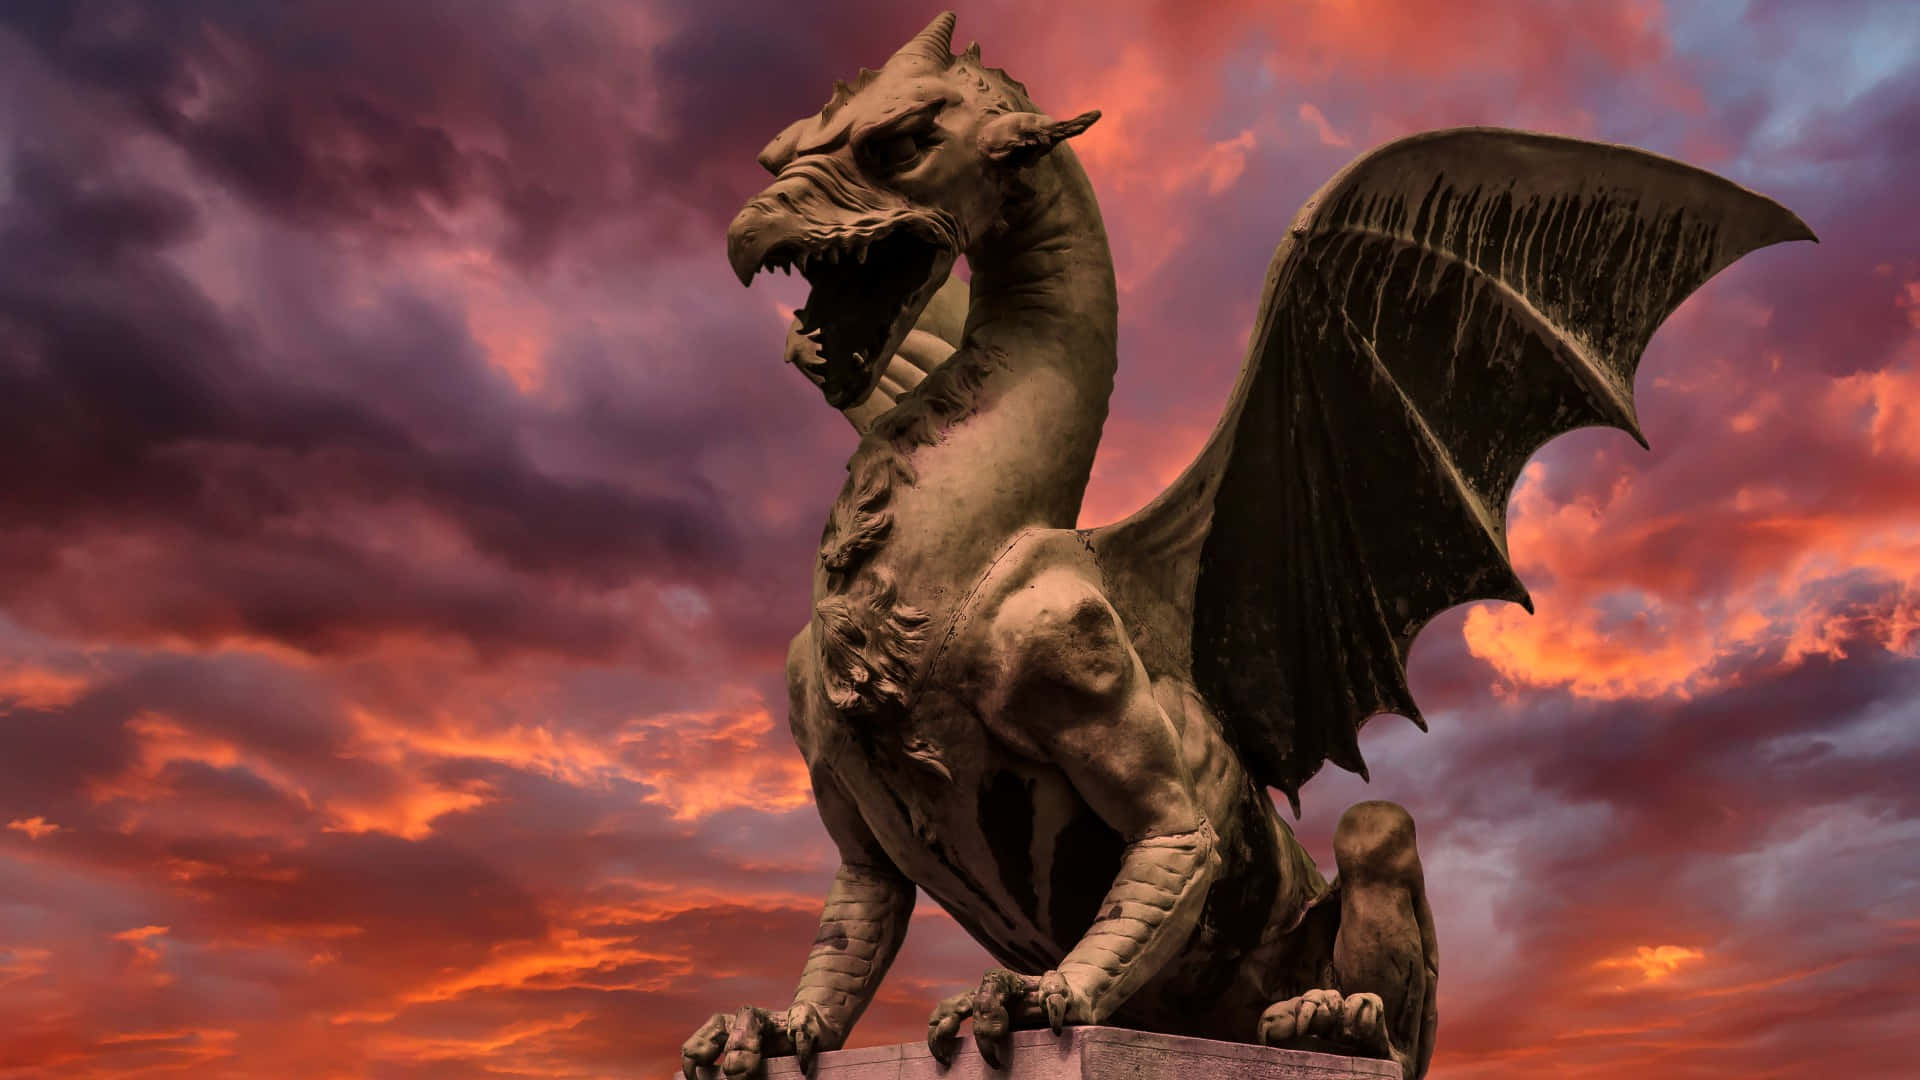 A majestic dragon rises over a wondrous landscape